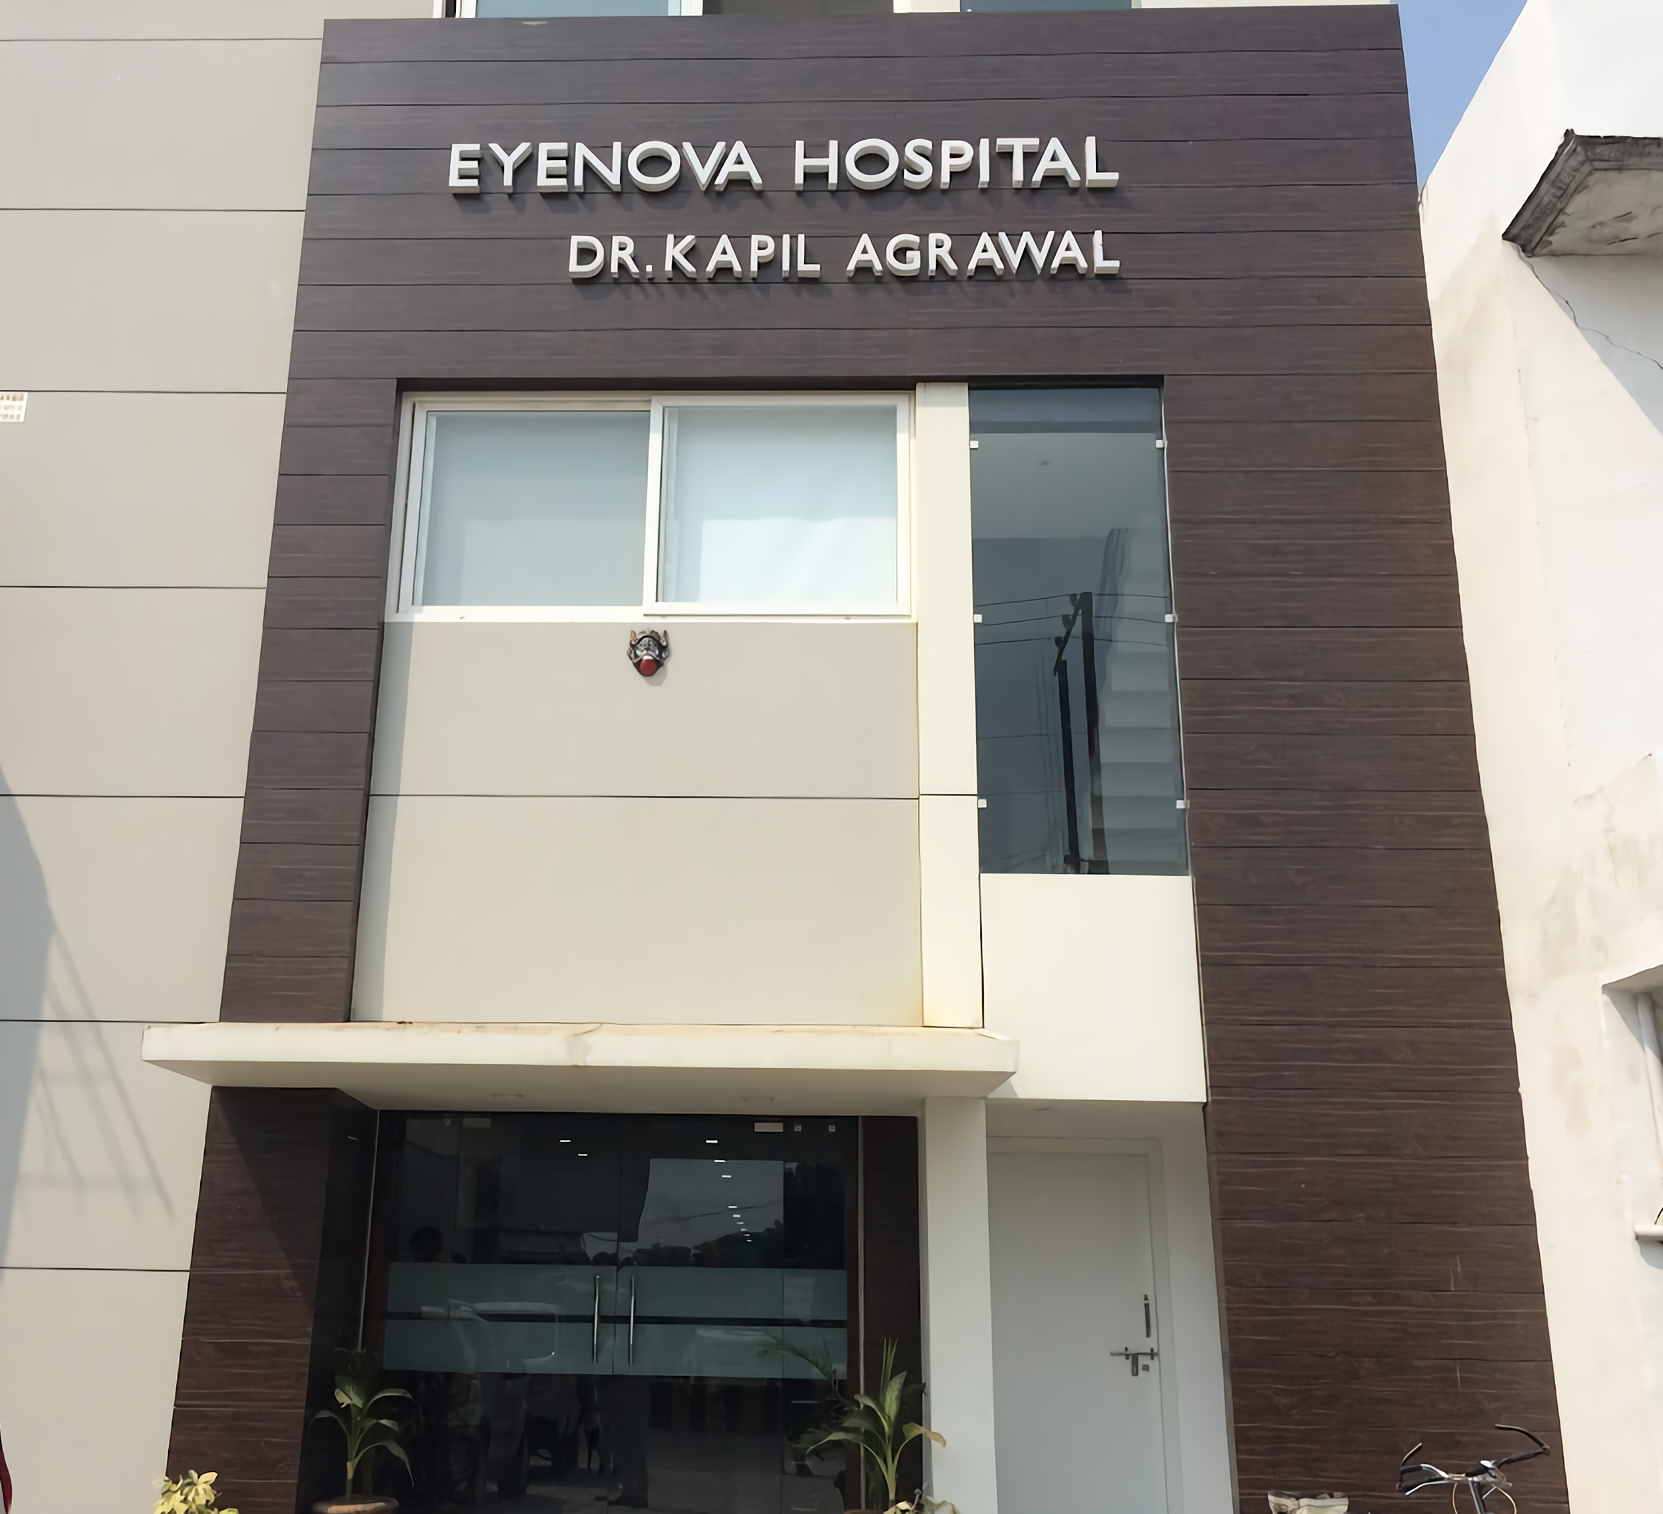 Eyenova Hospital